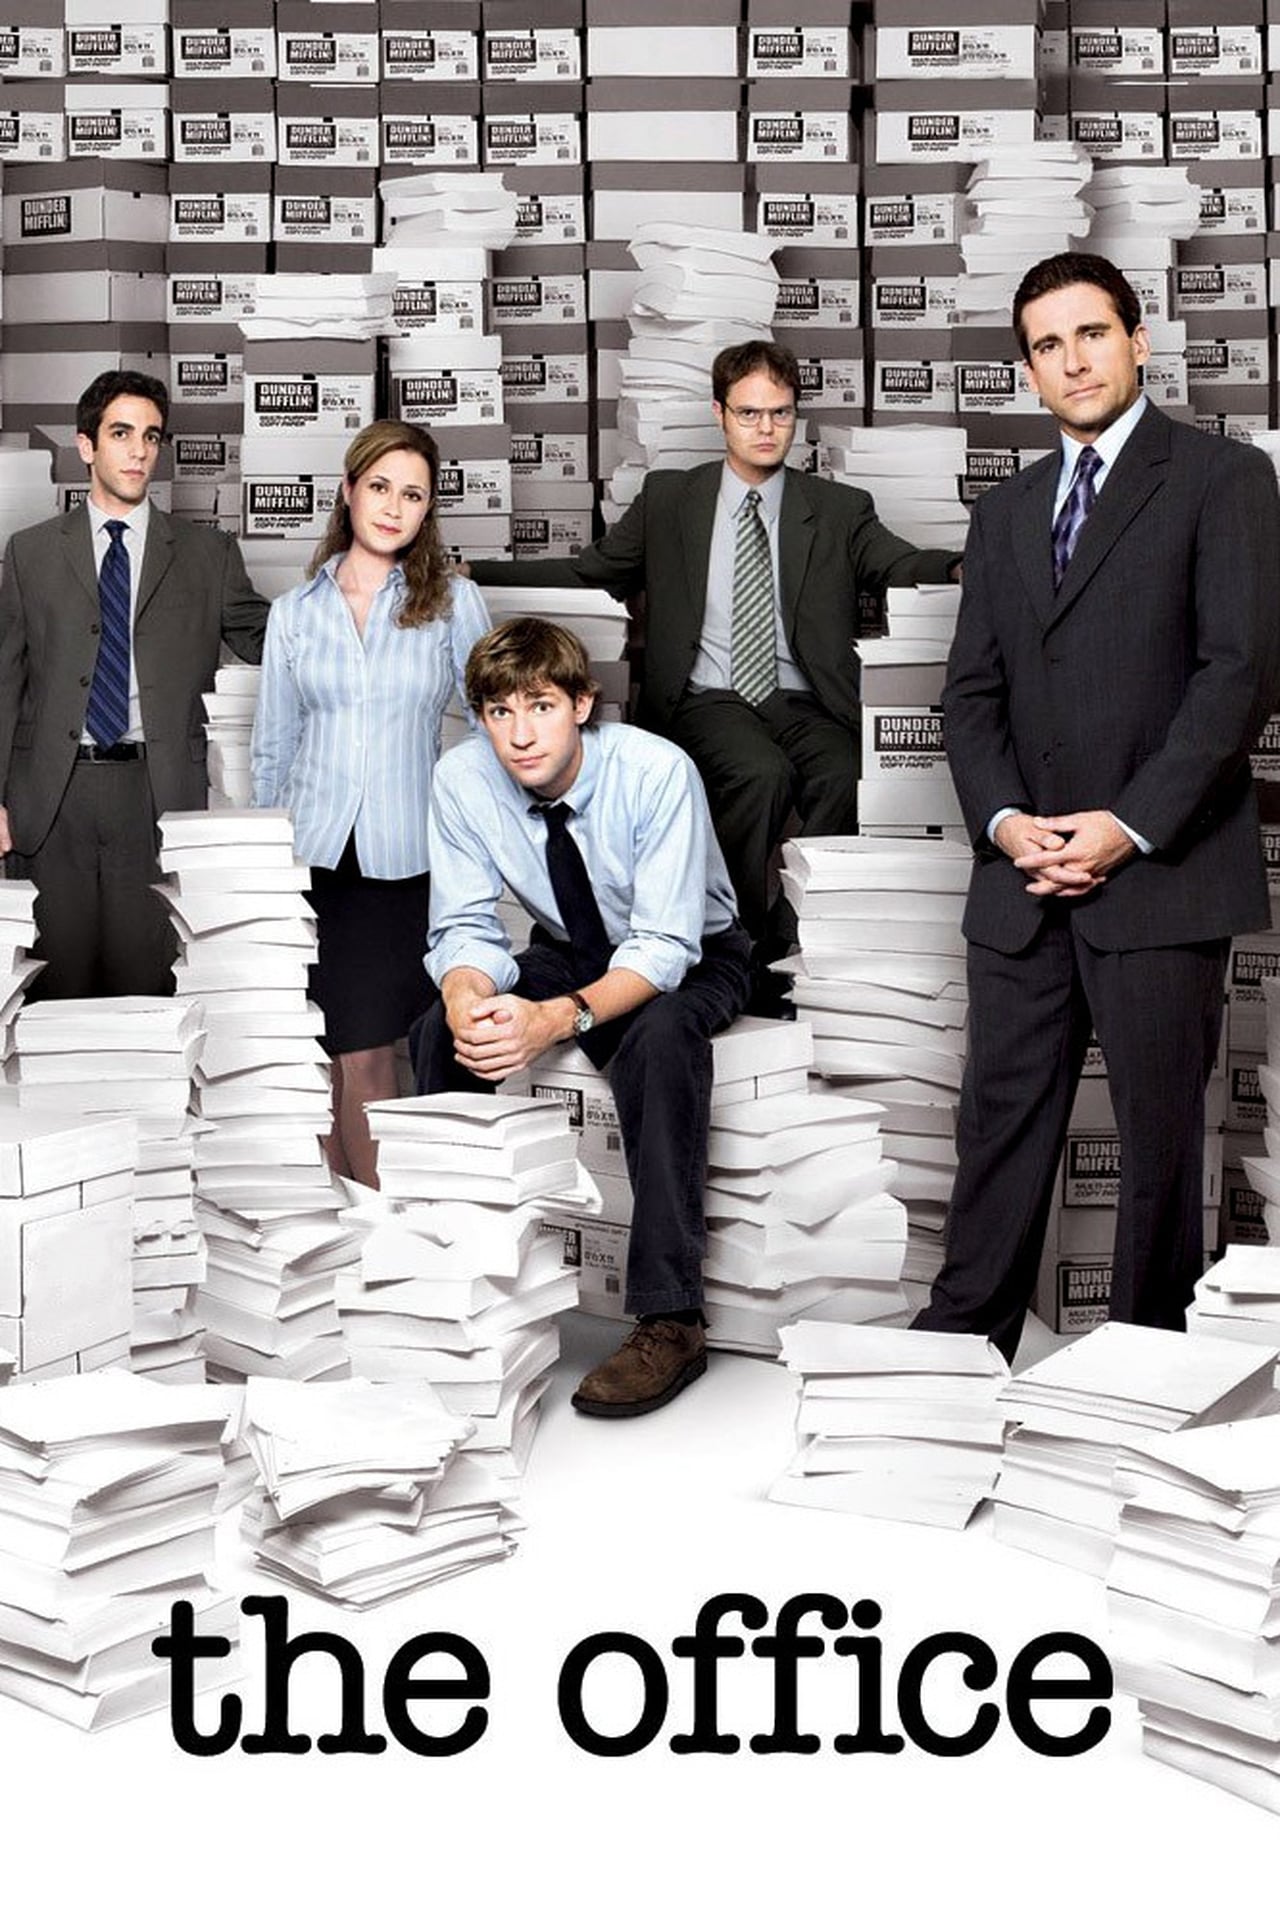 The Office (US) Season 6